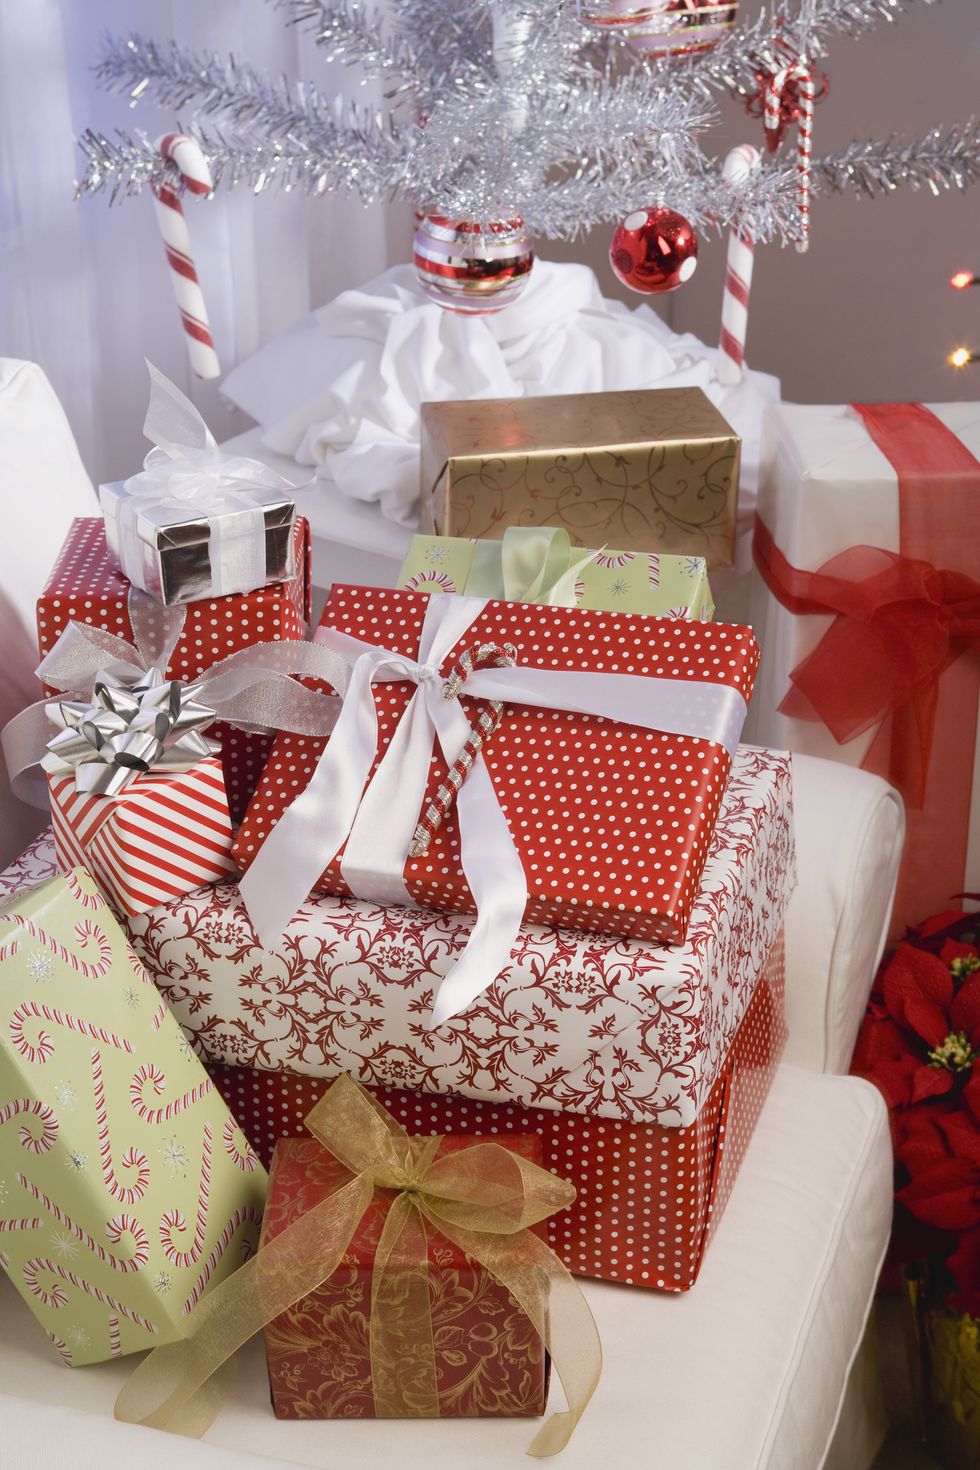 Detalles para regalar en Navidad: ideas DIY económicas y originales.